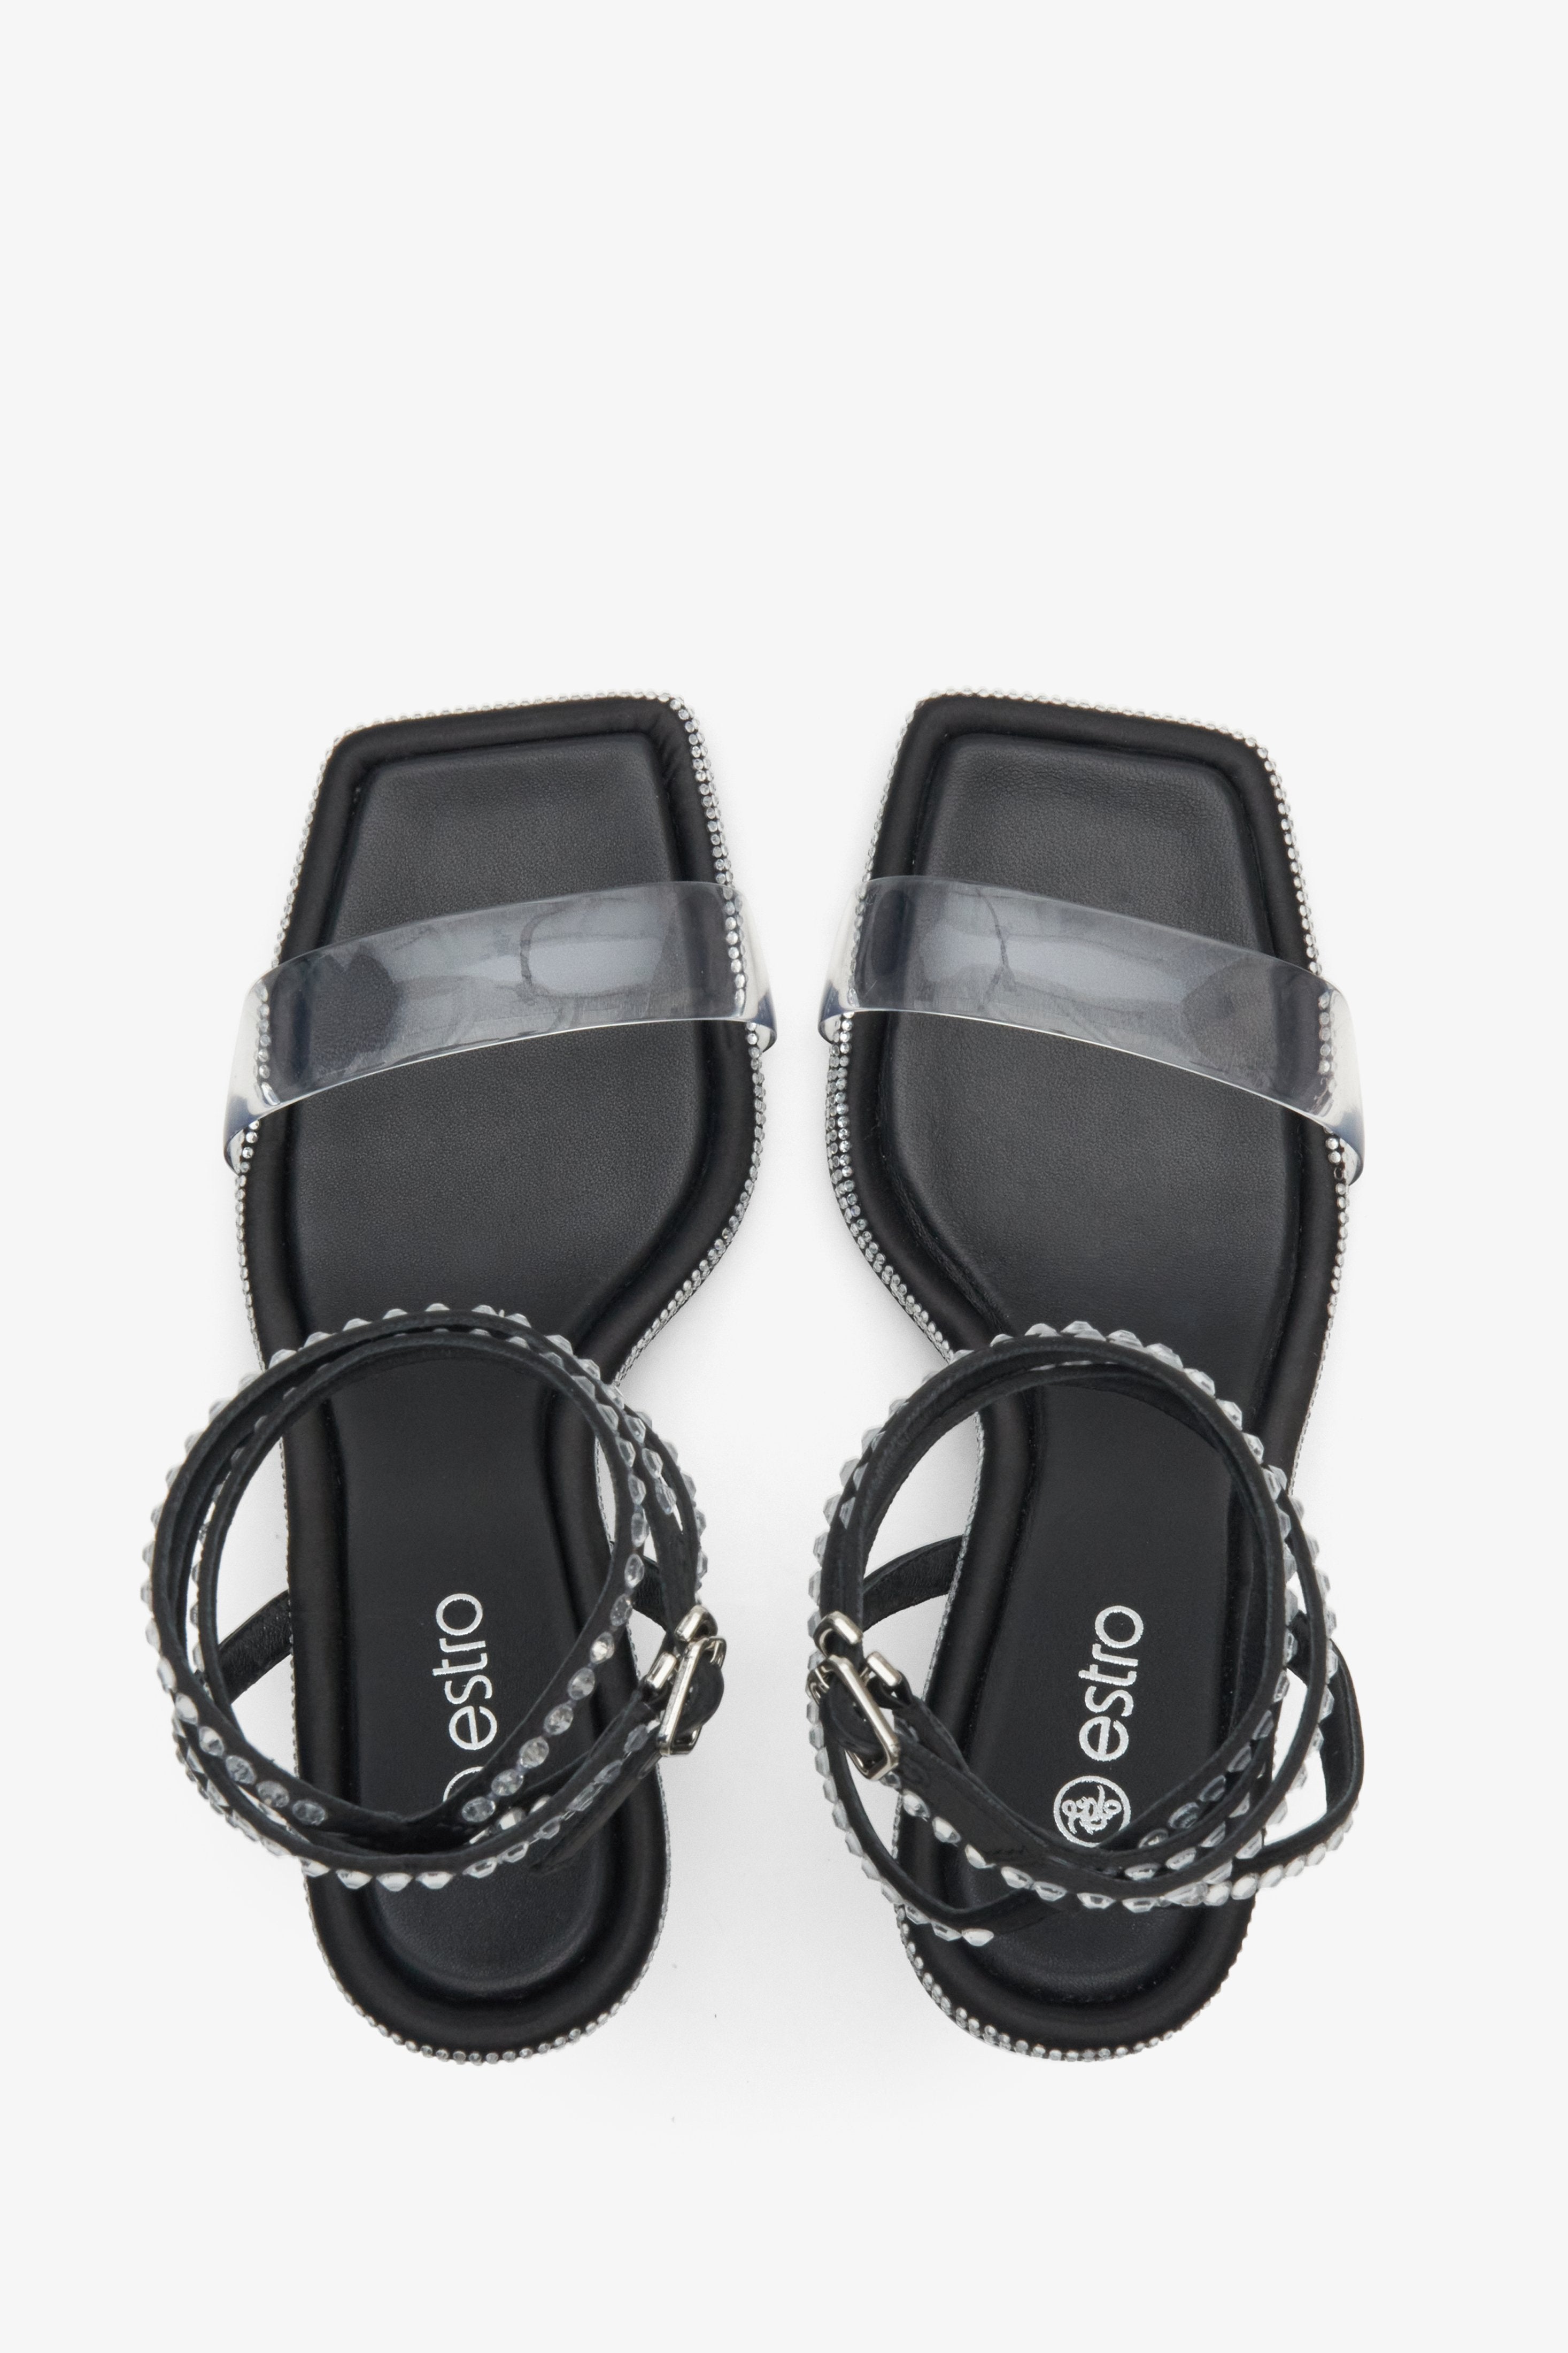 Czarne sandałki damskie na szpilce wysadzane kryształkami Estro - prezentacja modelu z góry.